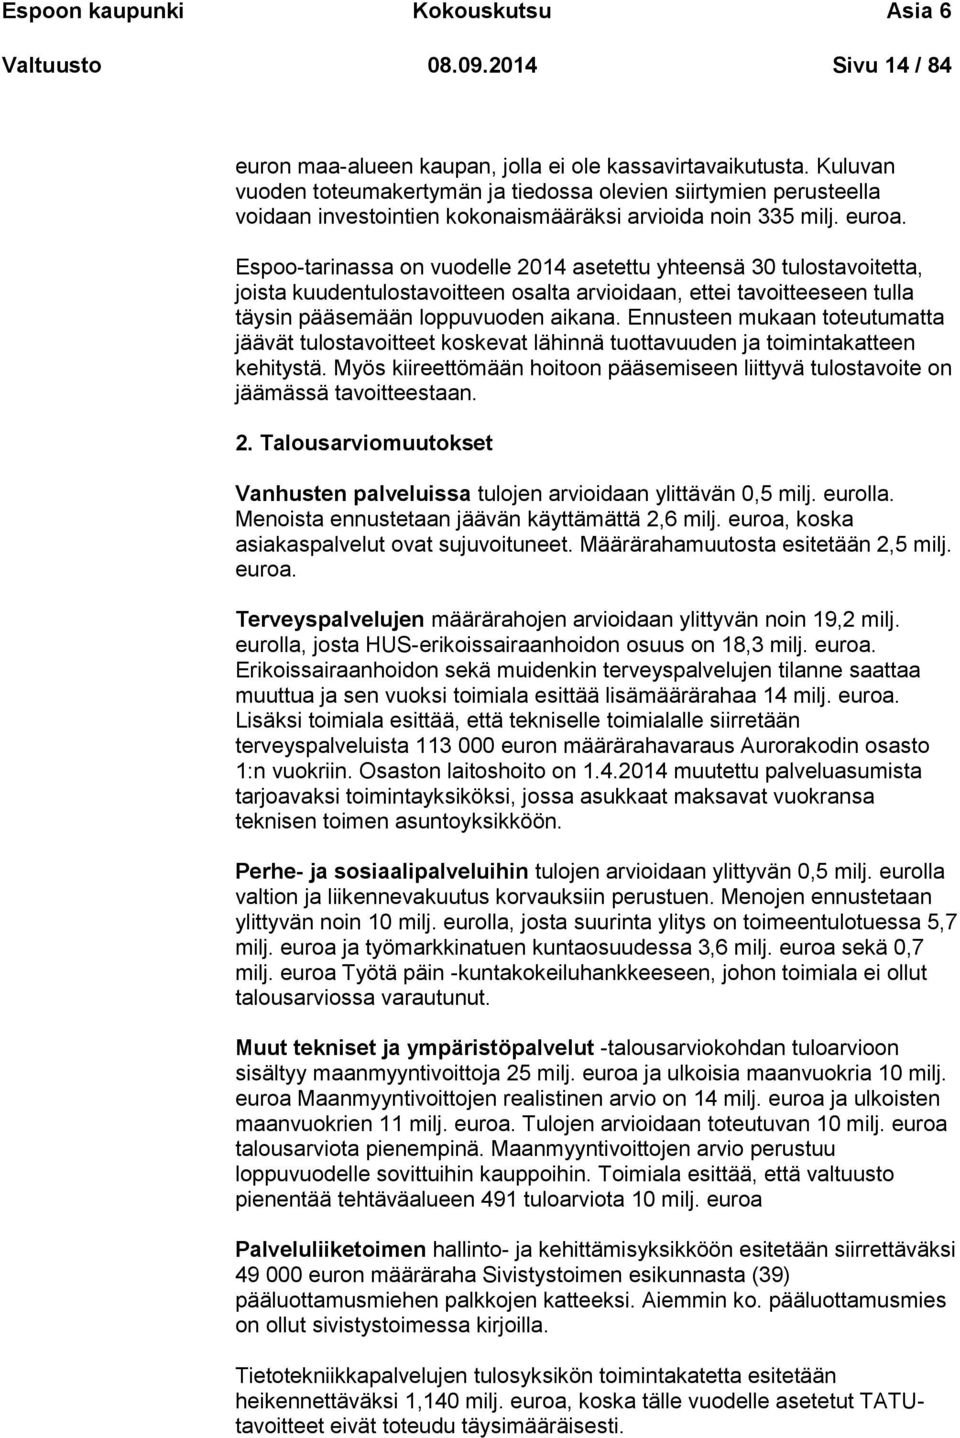 Espoo-tarinassa on vuodelle 2014 asetettu yhteensä 30 tulostavoitetta, joista kuudentulostavoitteen osalta arvioidaan, ettei tavoitteeseen tulla täysin pääsemään loppuvuoden aikana.